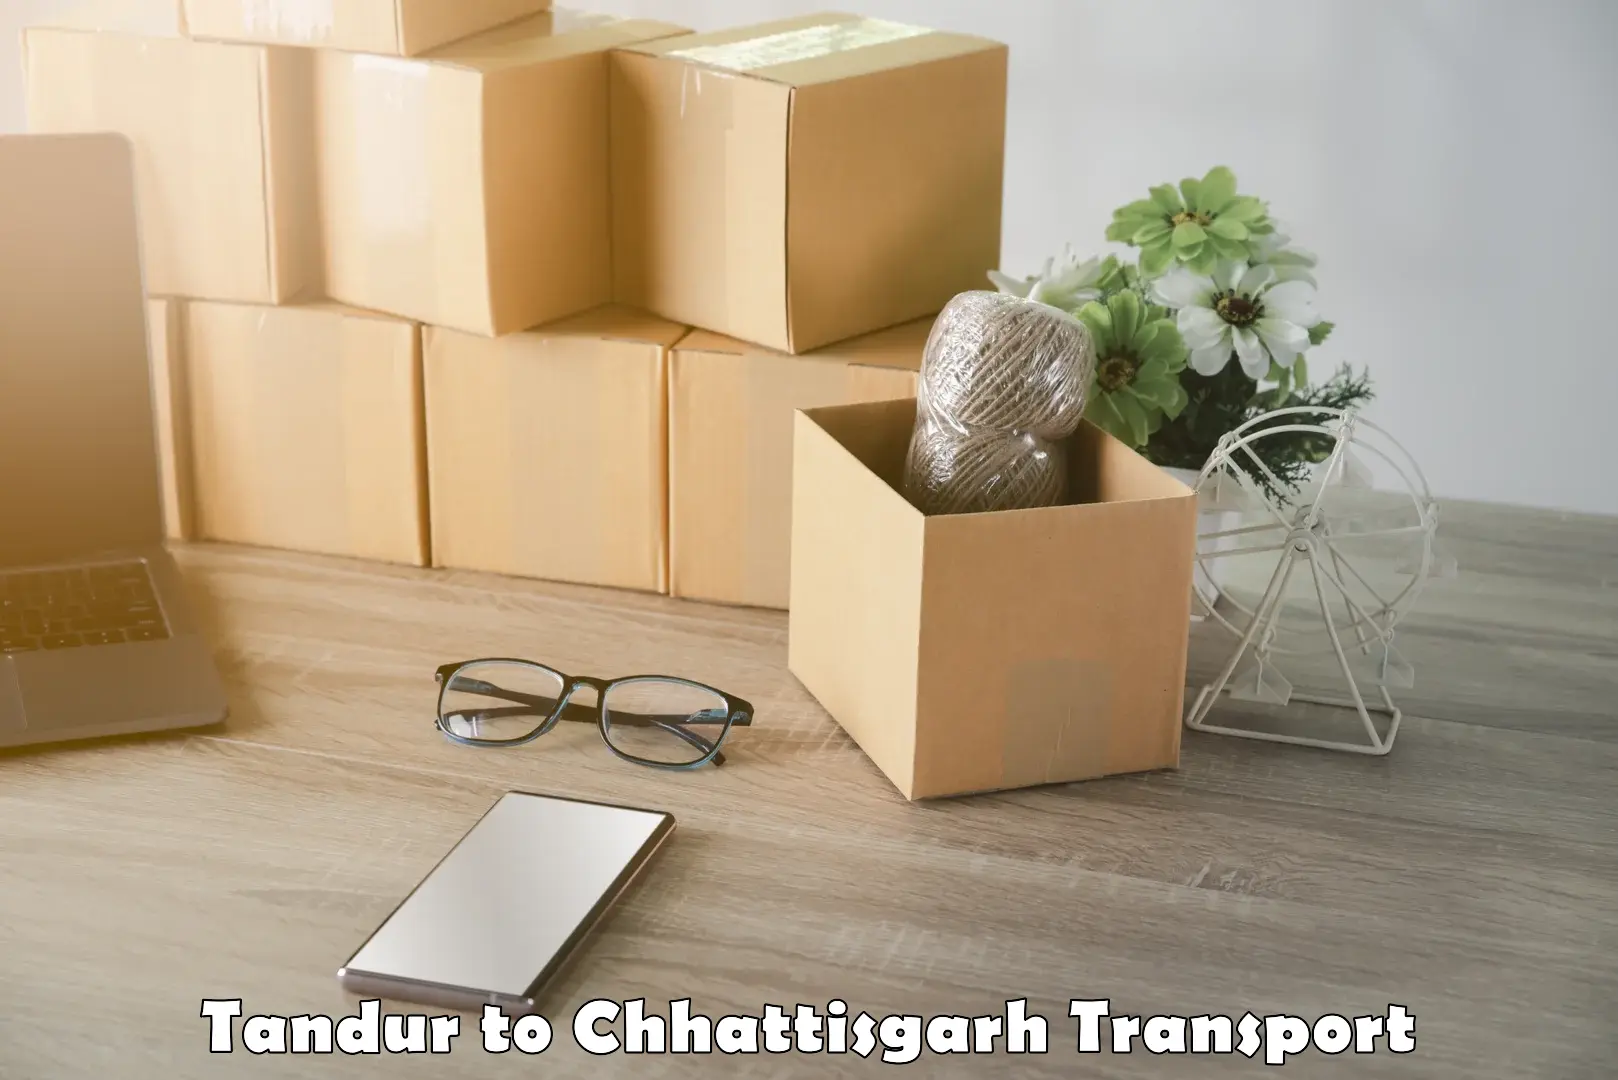 Cargo transport services Tandur to Pakhanjur